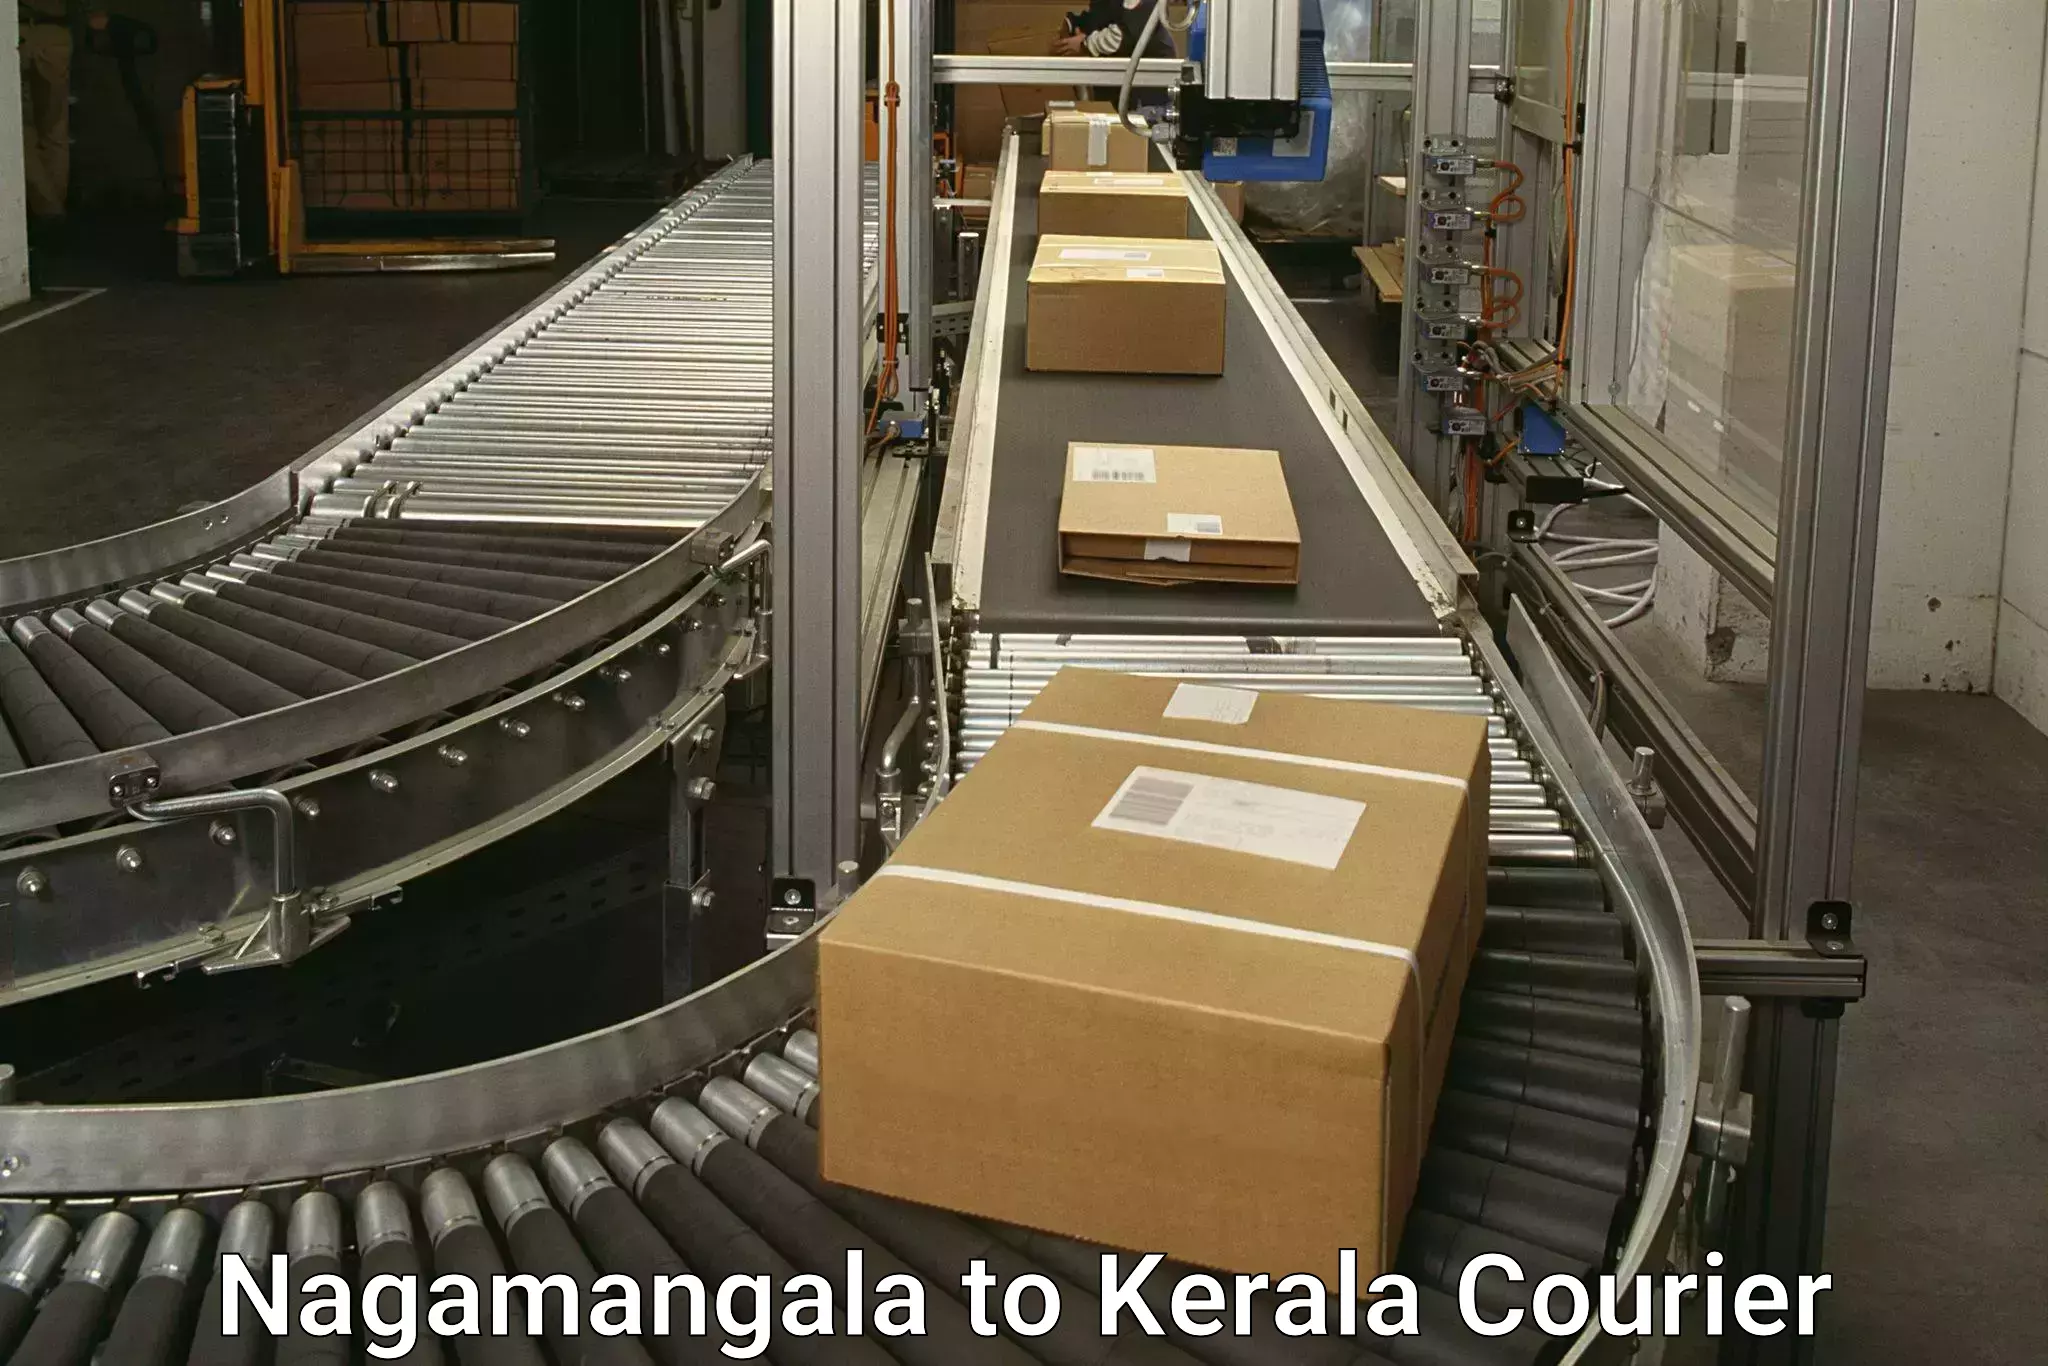 Ground shipping in Nagamangala to Thamarassery